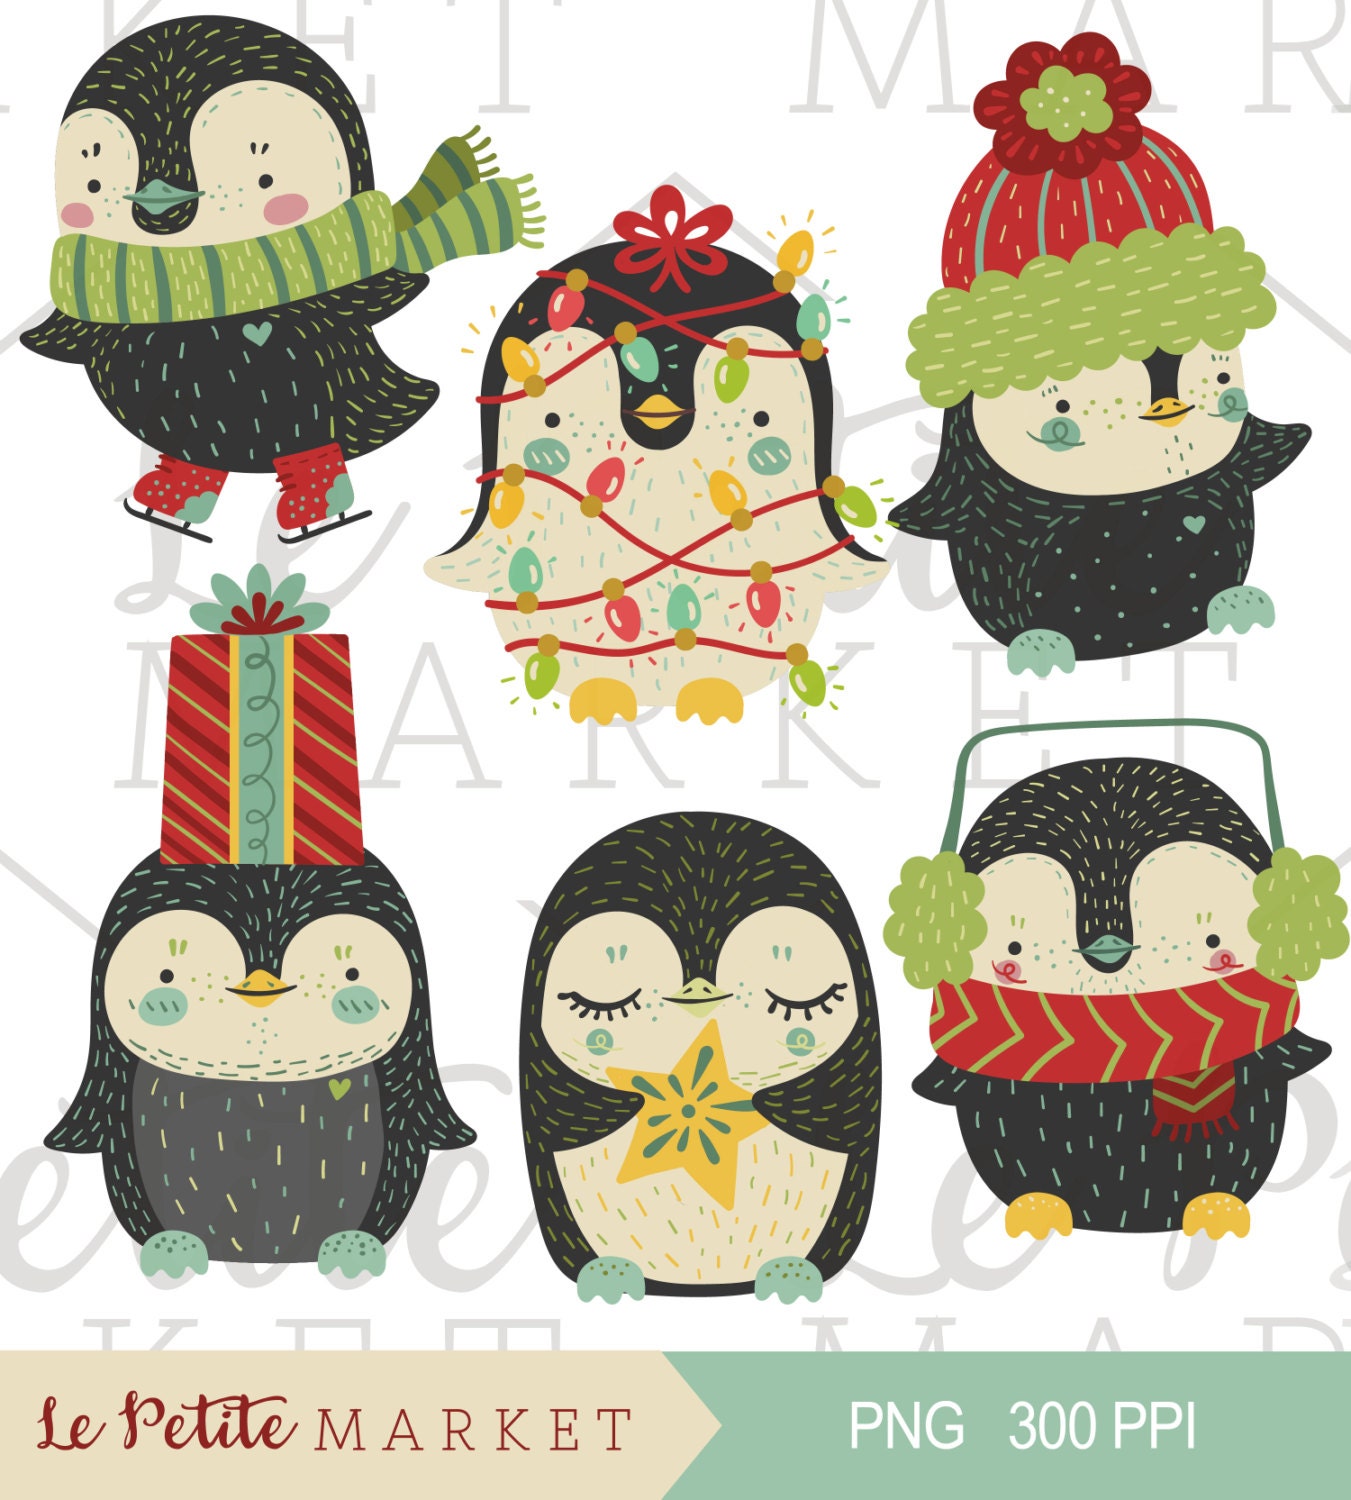 Niedliche Urlaub Pinguin ClipArt, Pinguin Clipart Weihnachten, Urlaub Pinguin  Illustration festgelegt, Cute Weihnachten ClipArt, Penguin Clipart - .de